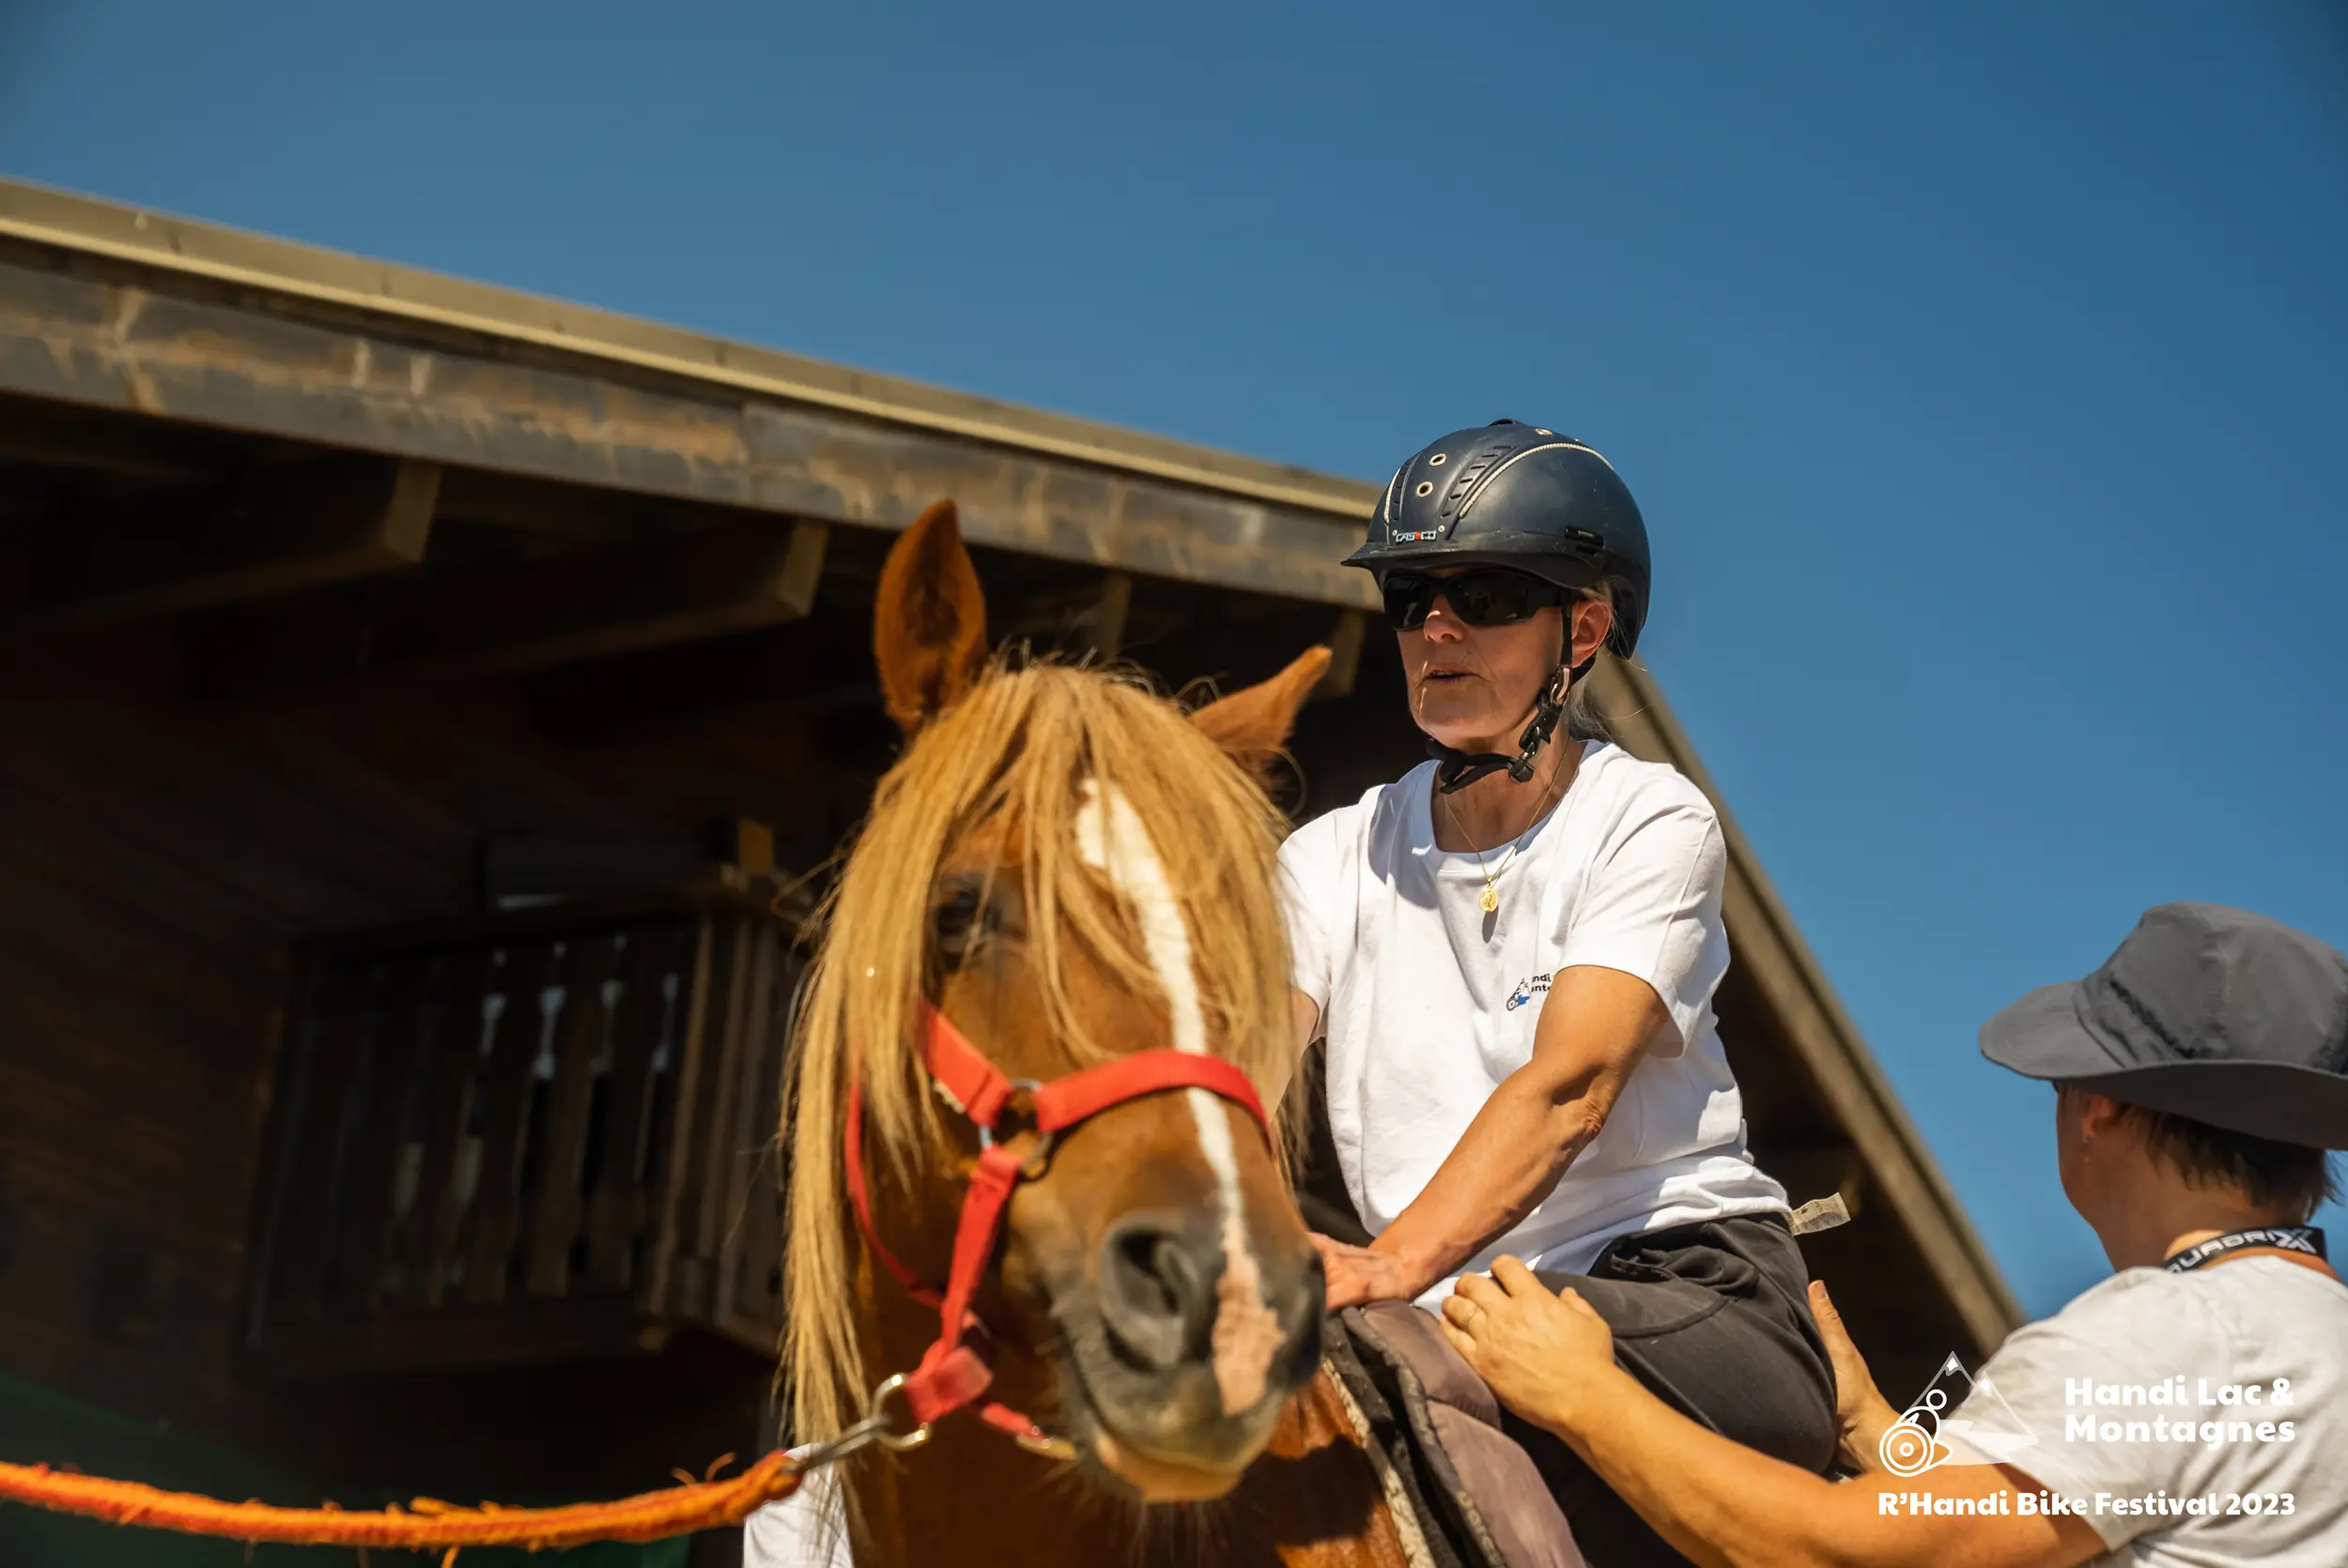 Une personne à mobilité réduite monte sur un cheval avec l'aide d'une bénévole